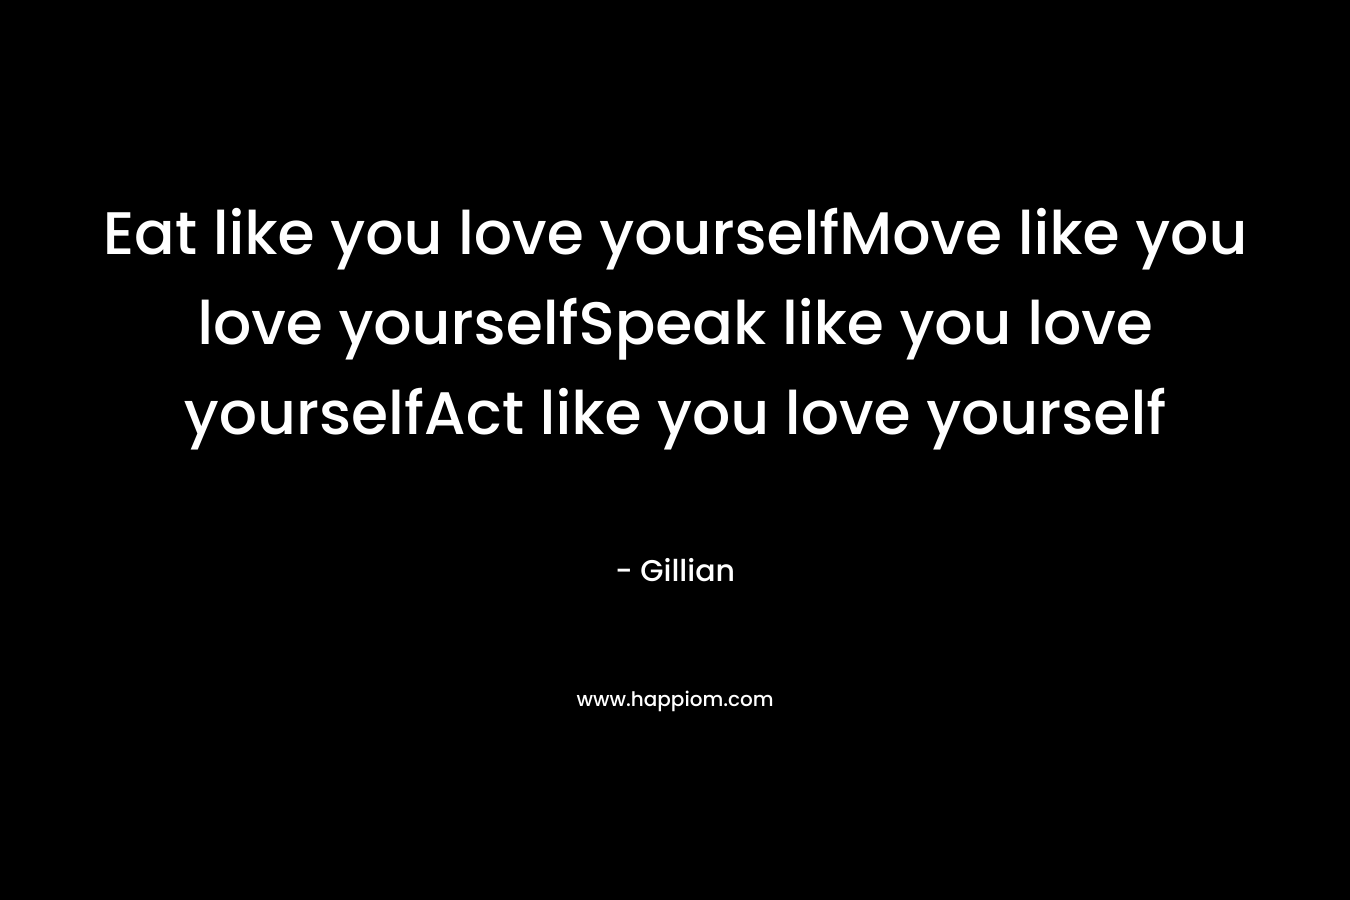 Eat like you love yourselfMove like you love yourselfSpeak like you love yourselfAct like you love yourself